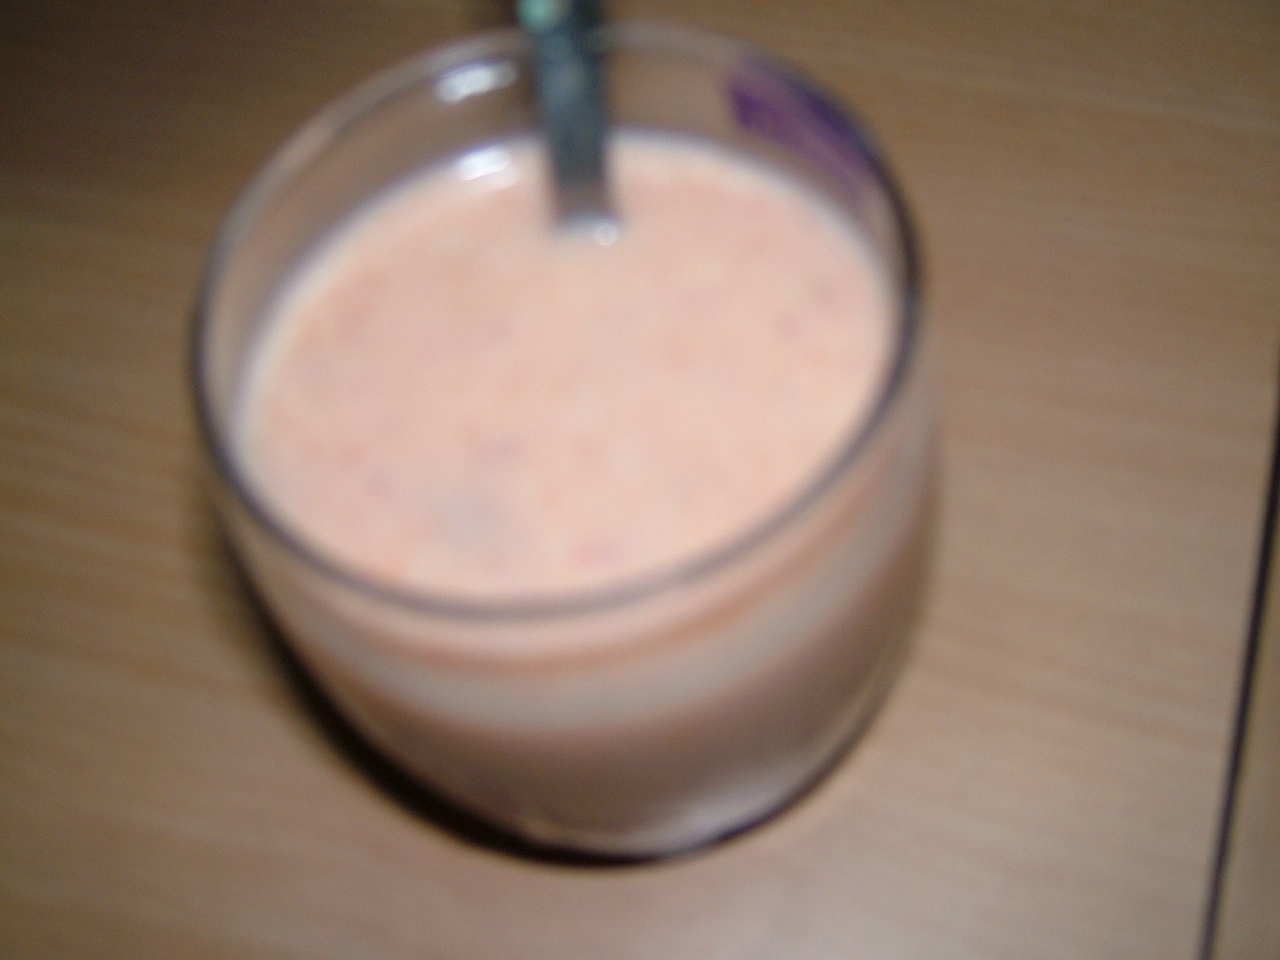 Mixed fruit milk shake